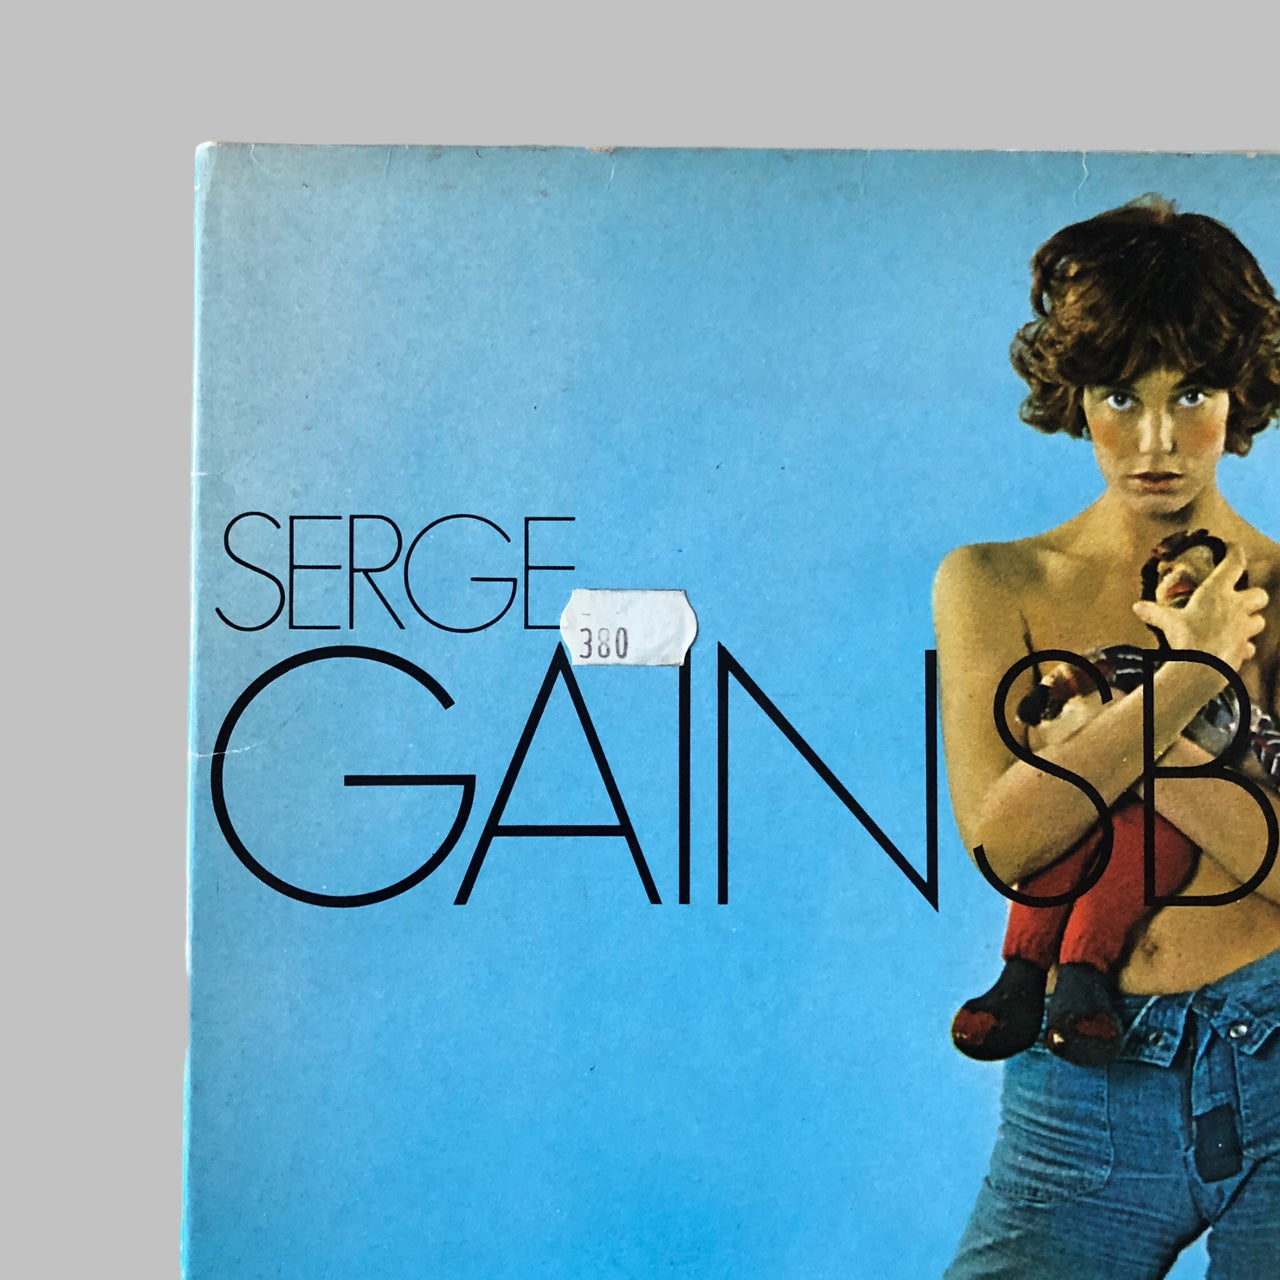 LP Vinyl - Serge Gainsbourg  - Histoire de Melody Nelson